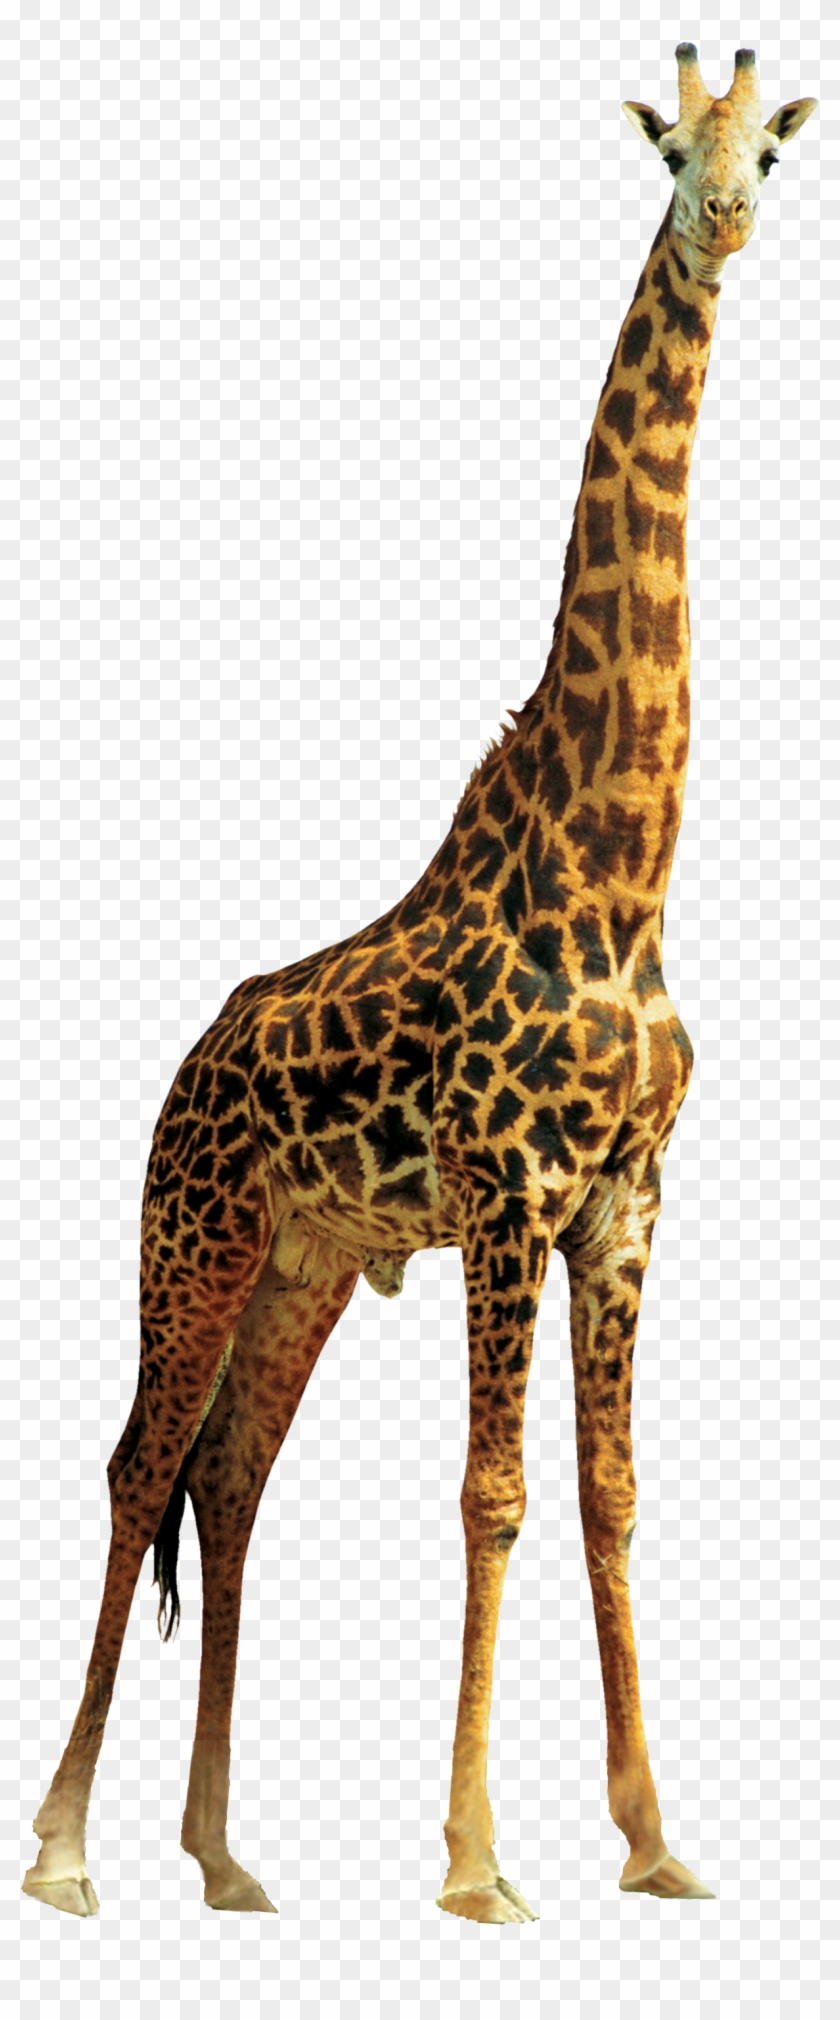 Giraffe - Giraffe Png Clipart #530809